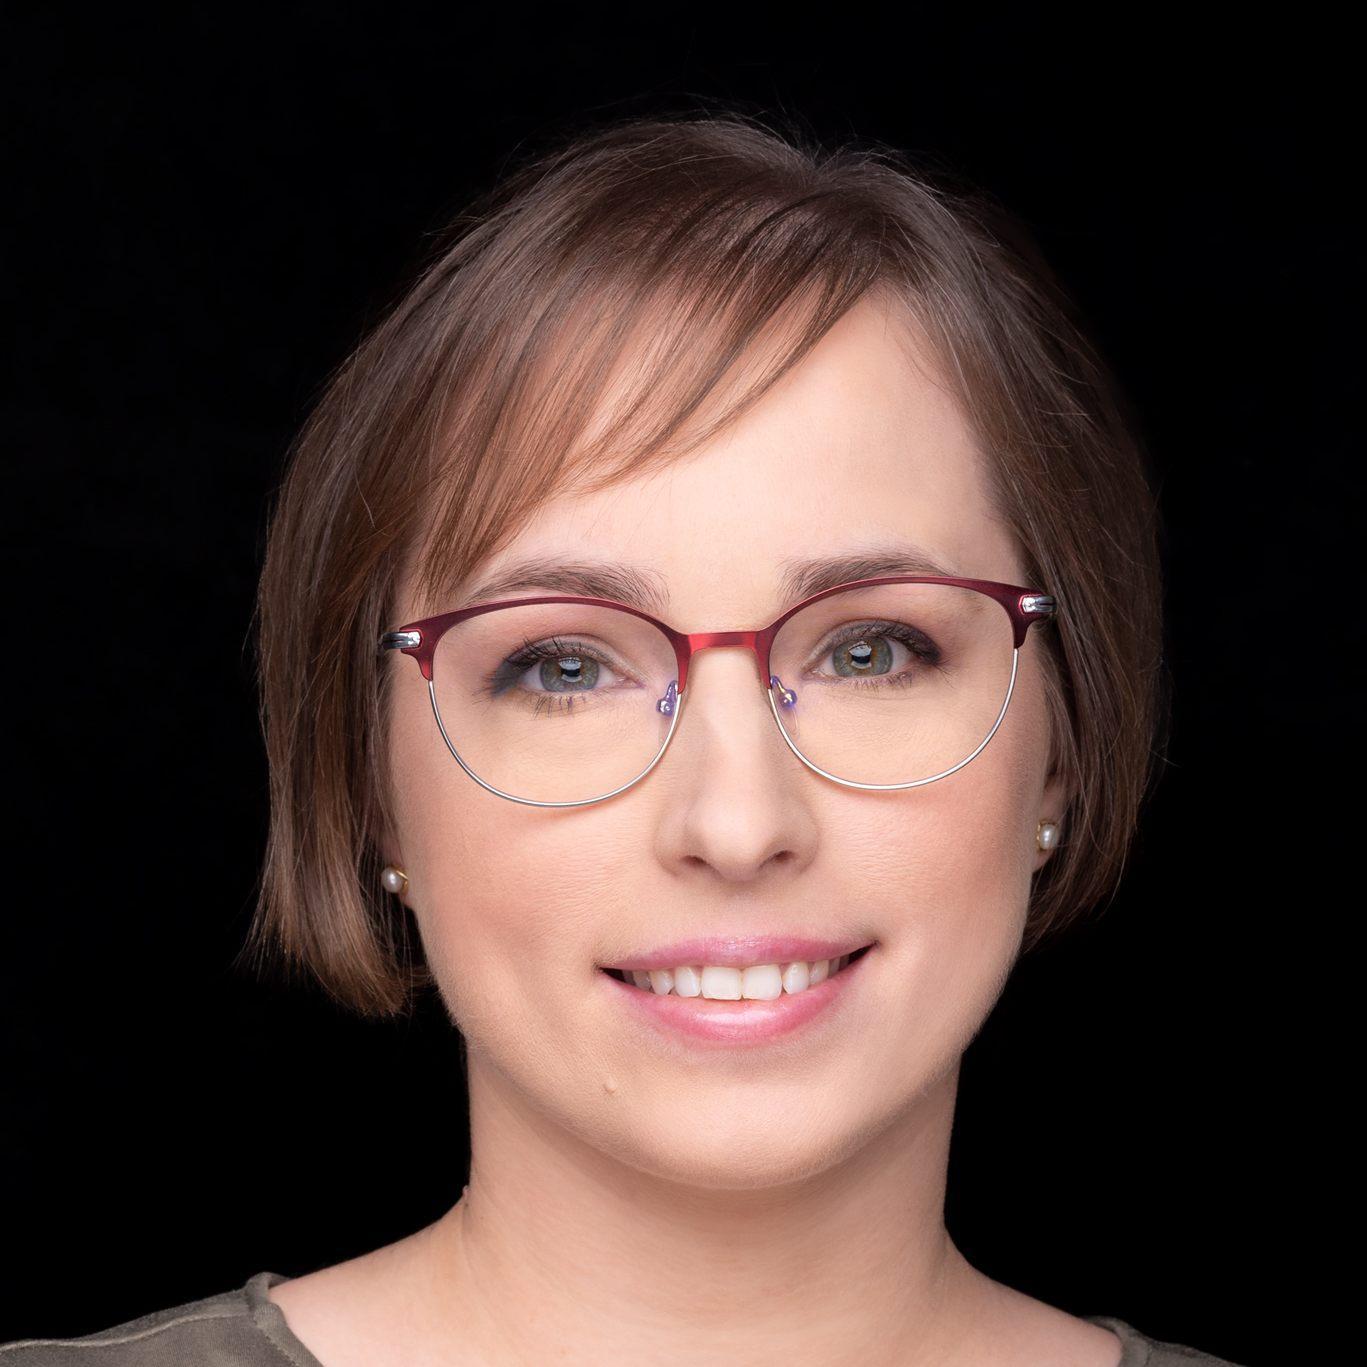 Agata Sobkow